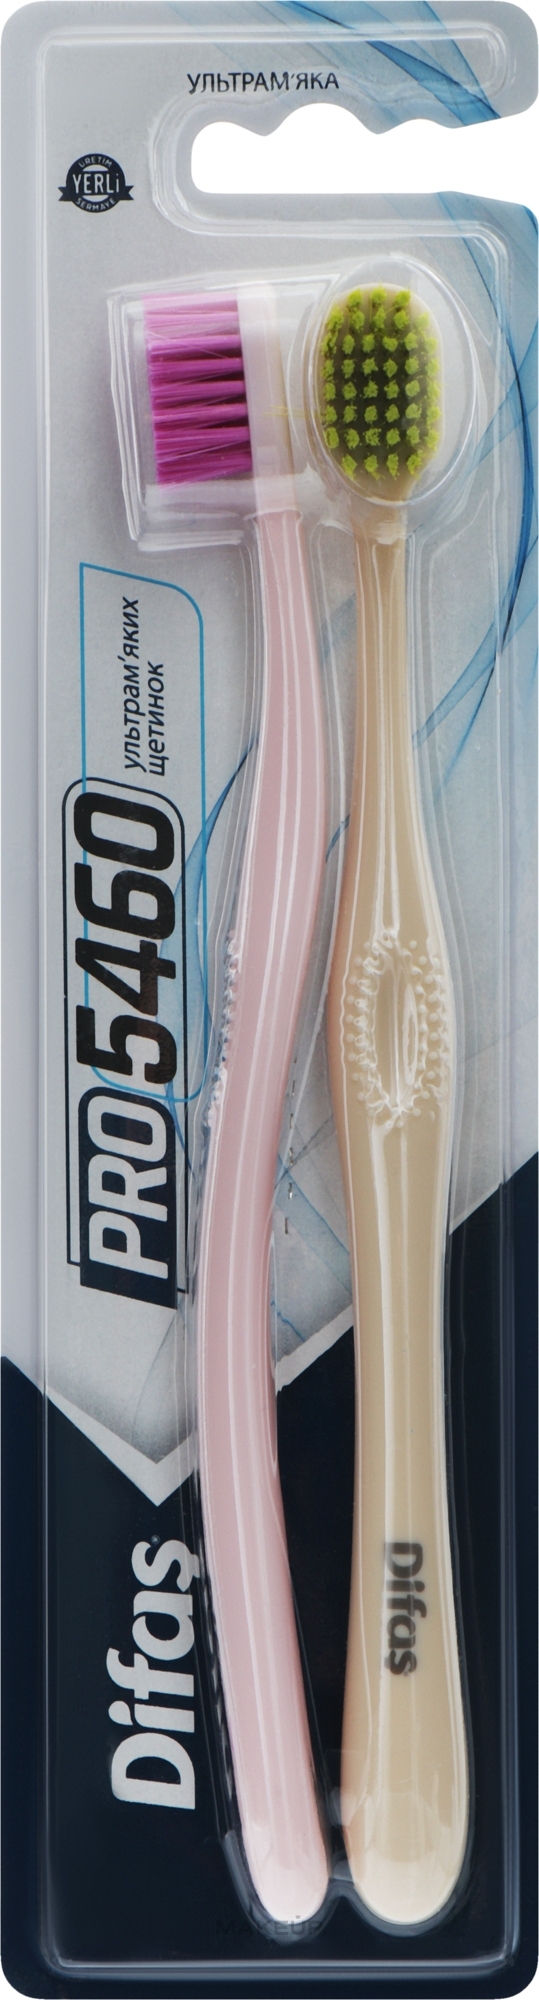 Набір зубних щіток "Ultra Soft", рожева + бежева - Difas PRO 5460 — фото 2шт